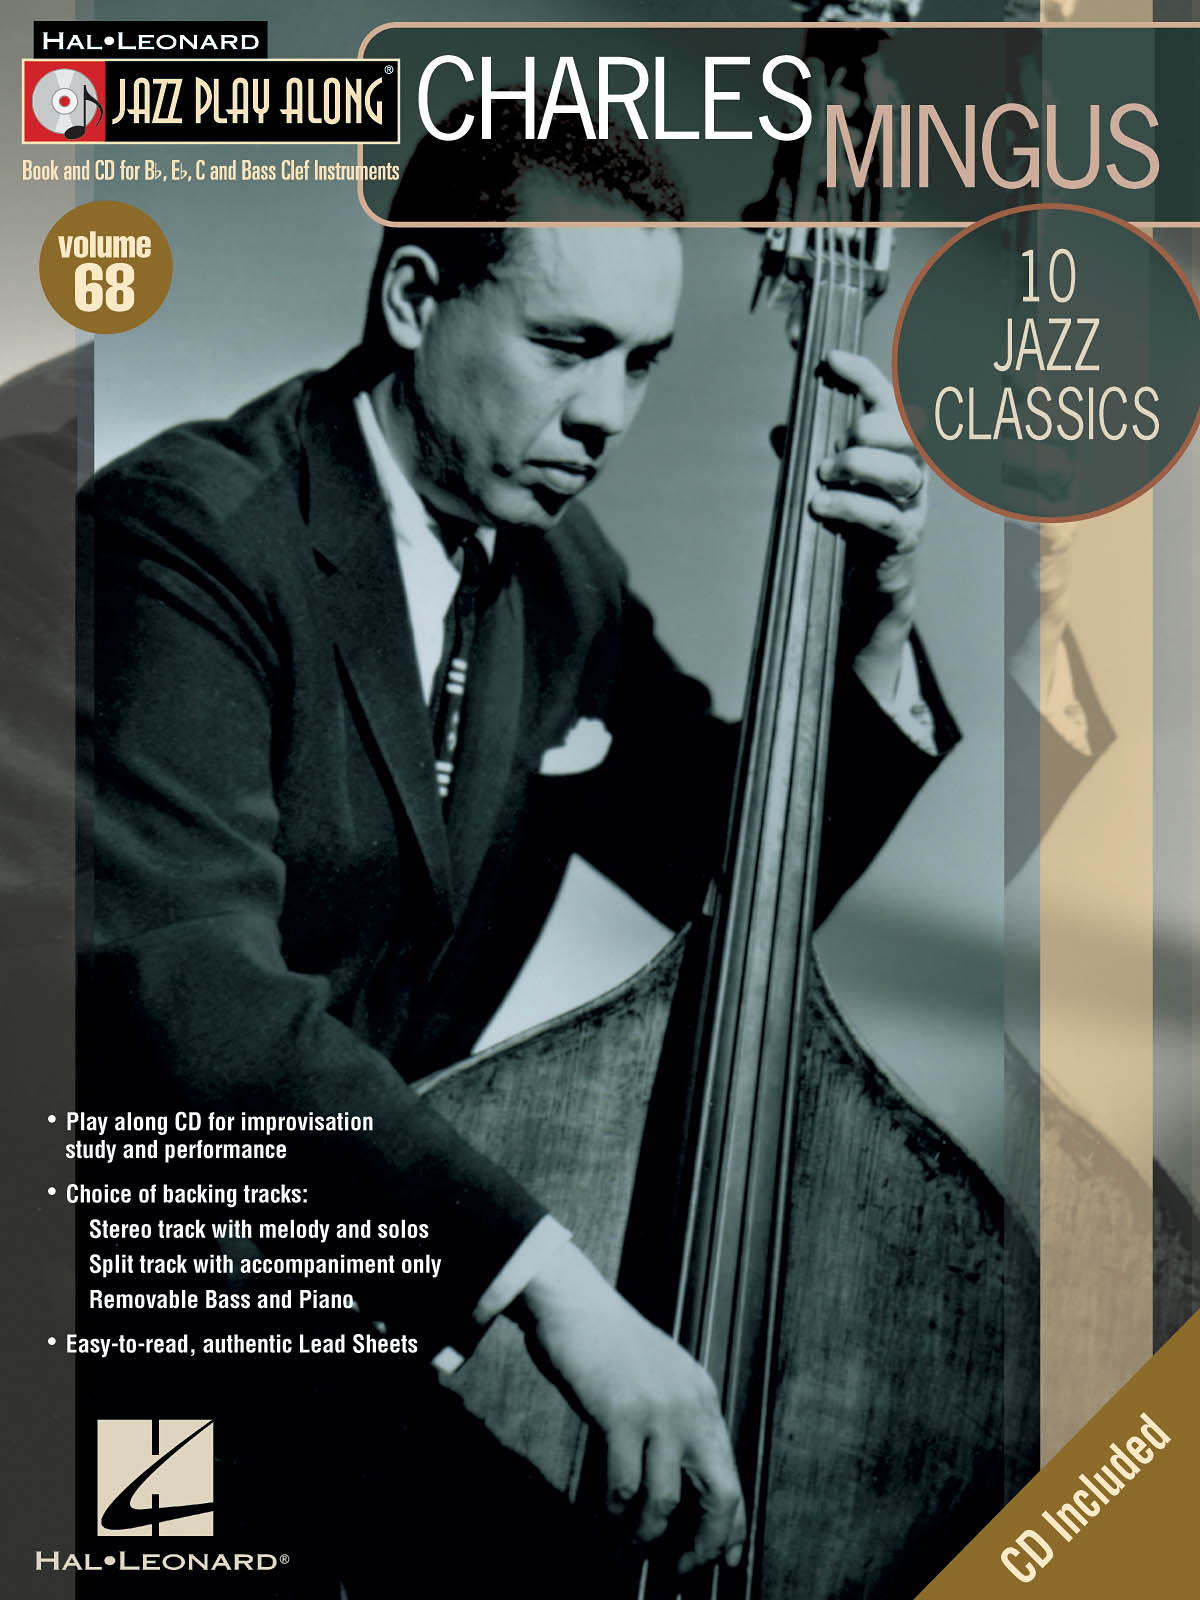 Charles Mingus - Jazz Play-Along Volume 68 - noty pro nástroje v ladění C